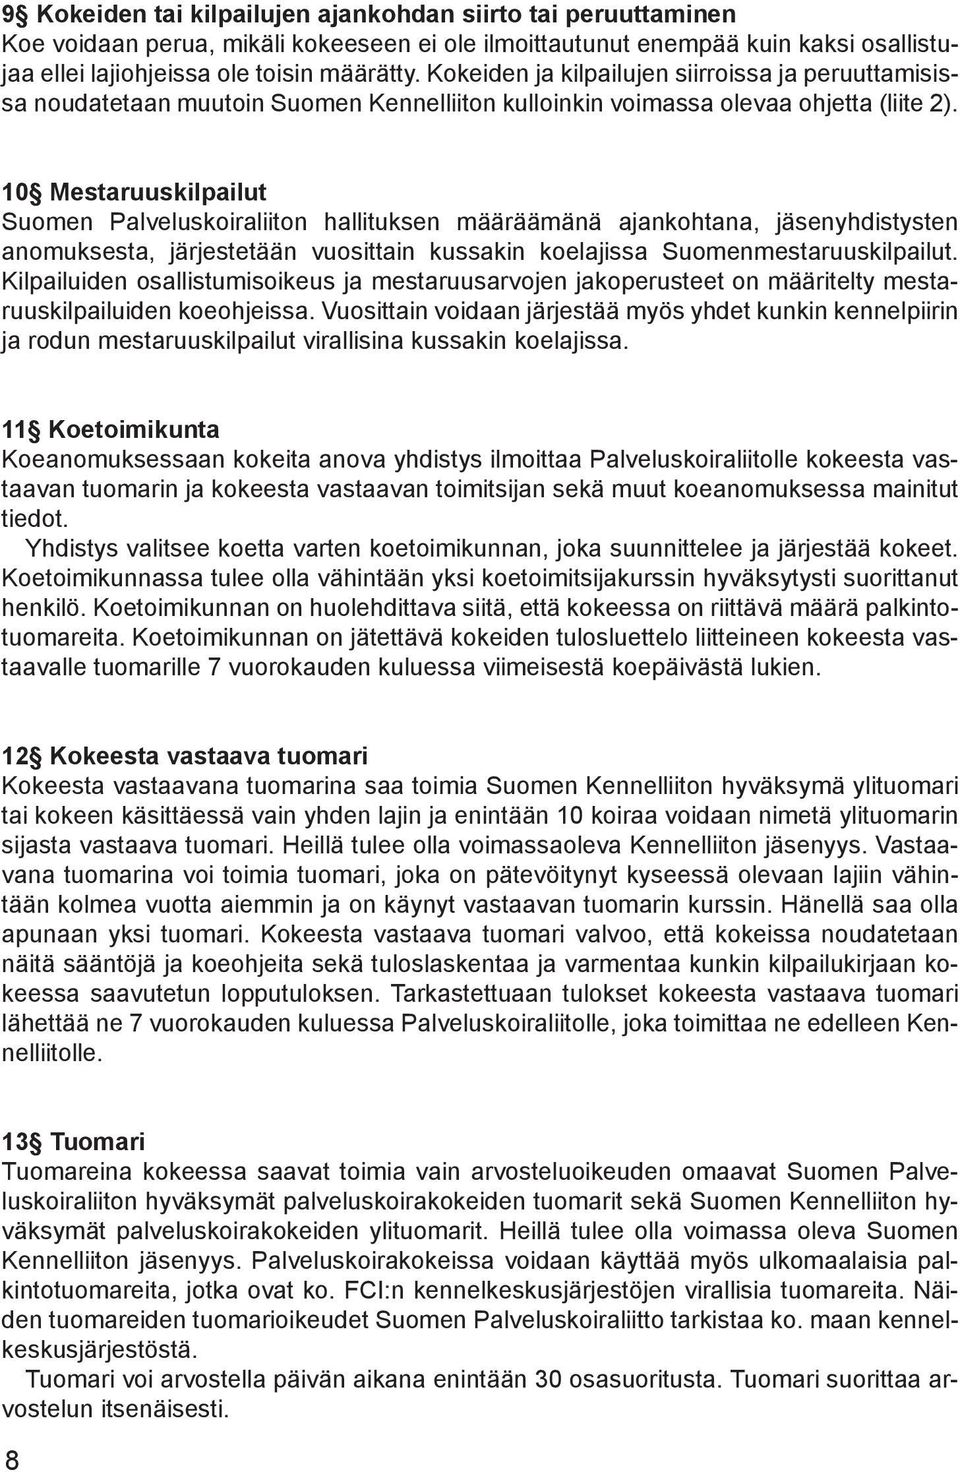 10 Mestaruuskilpailut Suomen Palveluskoiraliiton hallituksen määräämänä ajankohtana, jäsenyhdistysten anomuksesta, järjestetään vuosittain kussakin koelajissa Suomenmestaruuskilpailut.